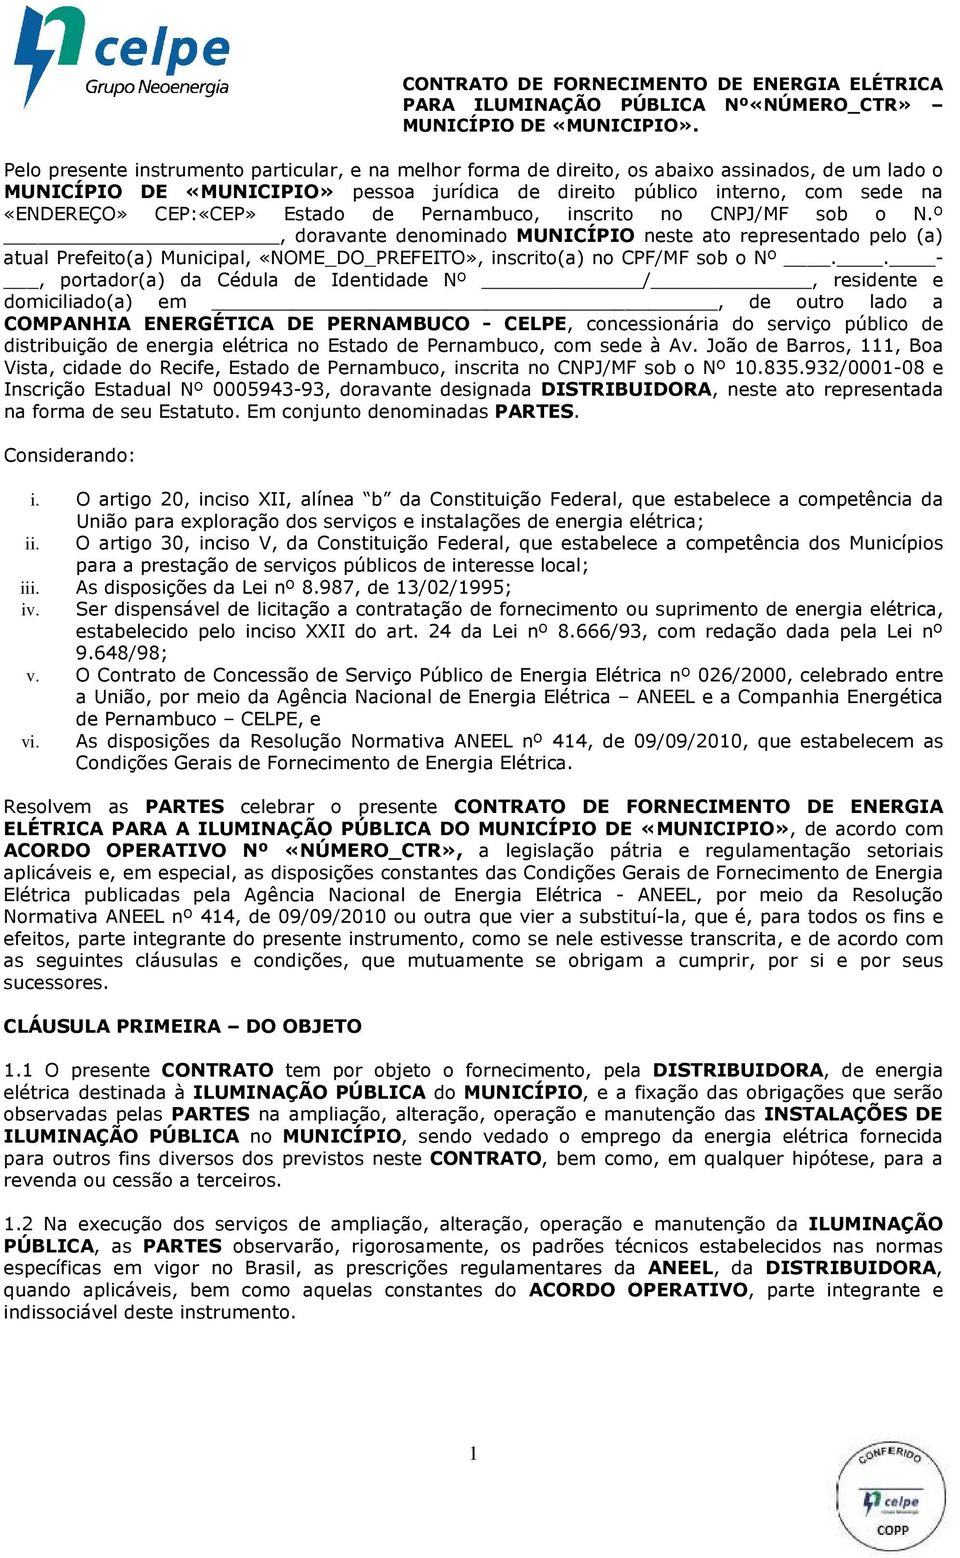 CEP:«CEP» Estado de Pernambuco, inscrito no CNPJ/MF sob o N.